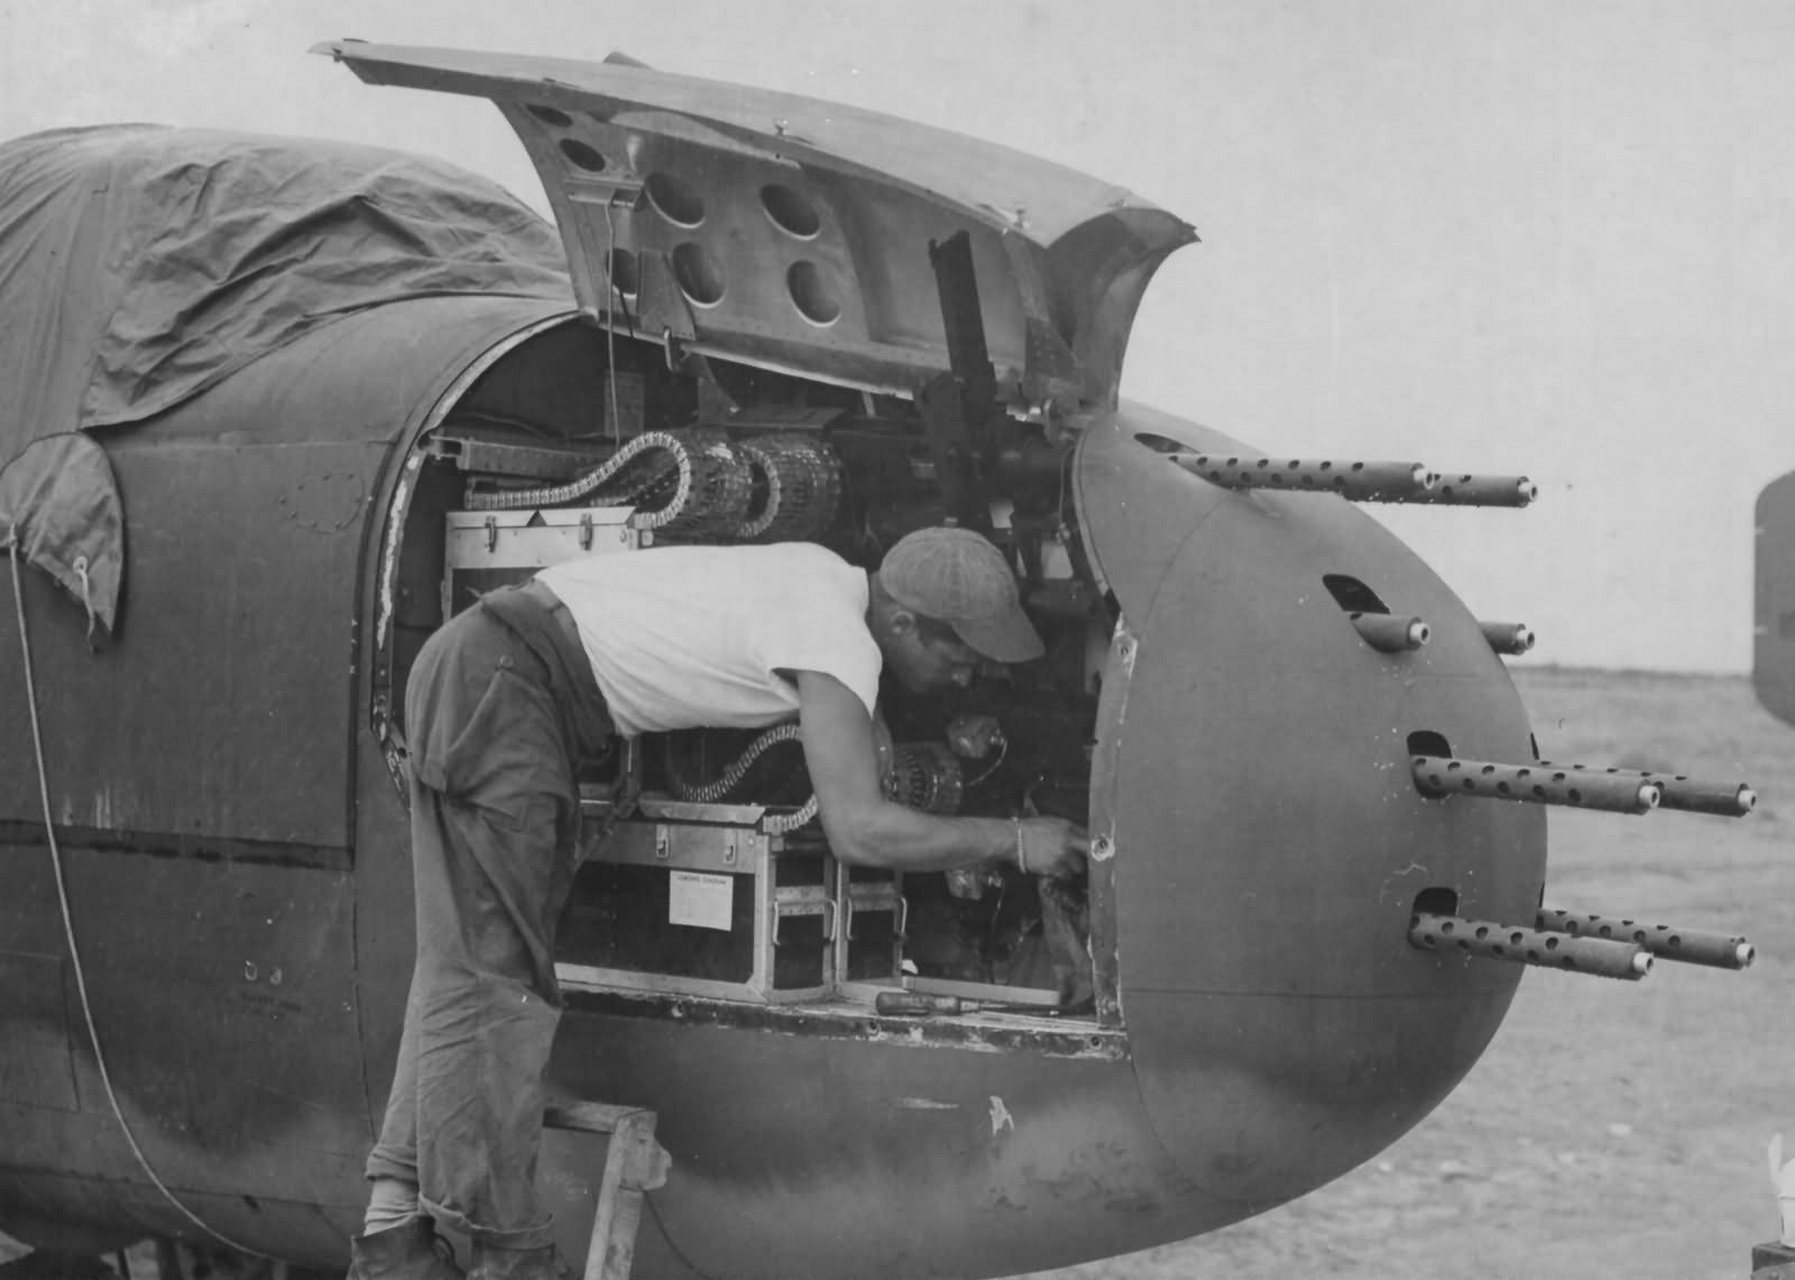 二战功勋 b-25 米切尔轰炸机,是北美航空公司制造的双引擎中型轰炸机